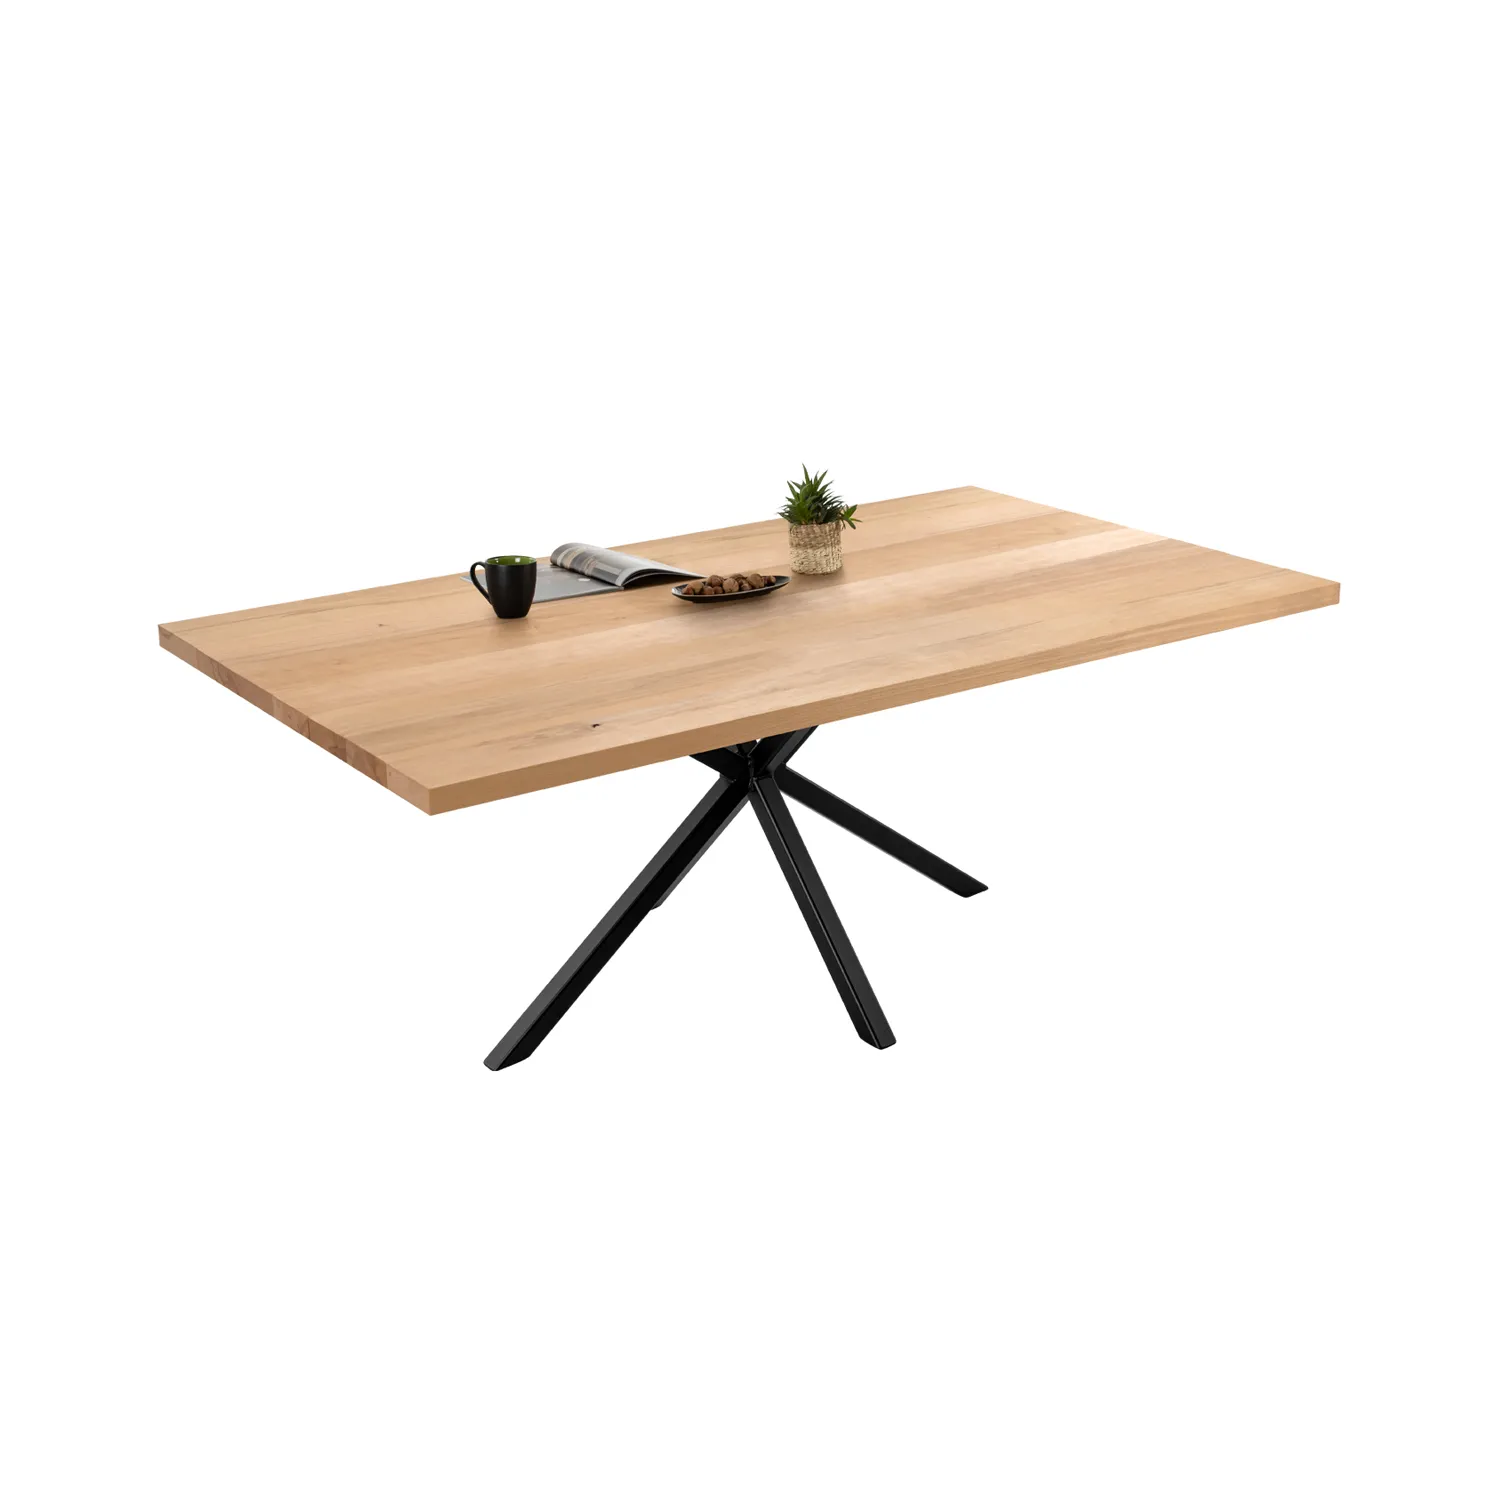 Esstisch aus Buche Massivholz mit Stahlsäule als Tischgestell